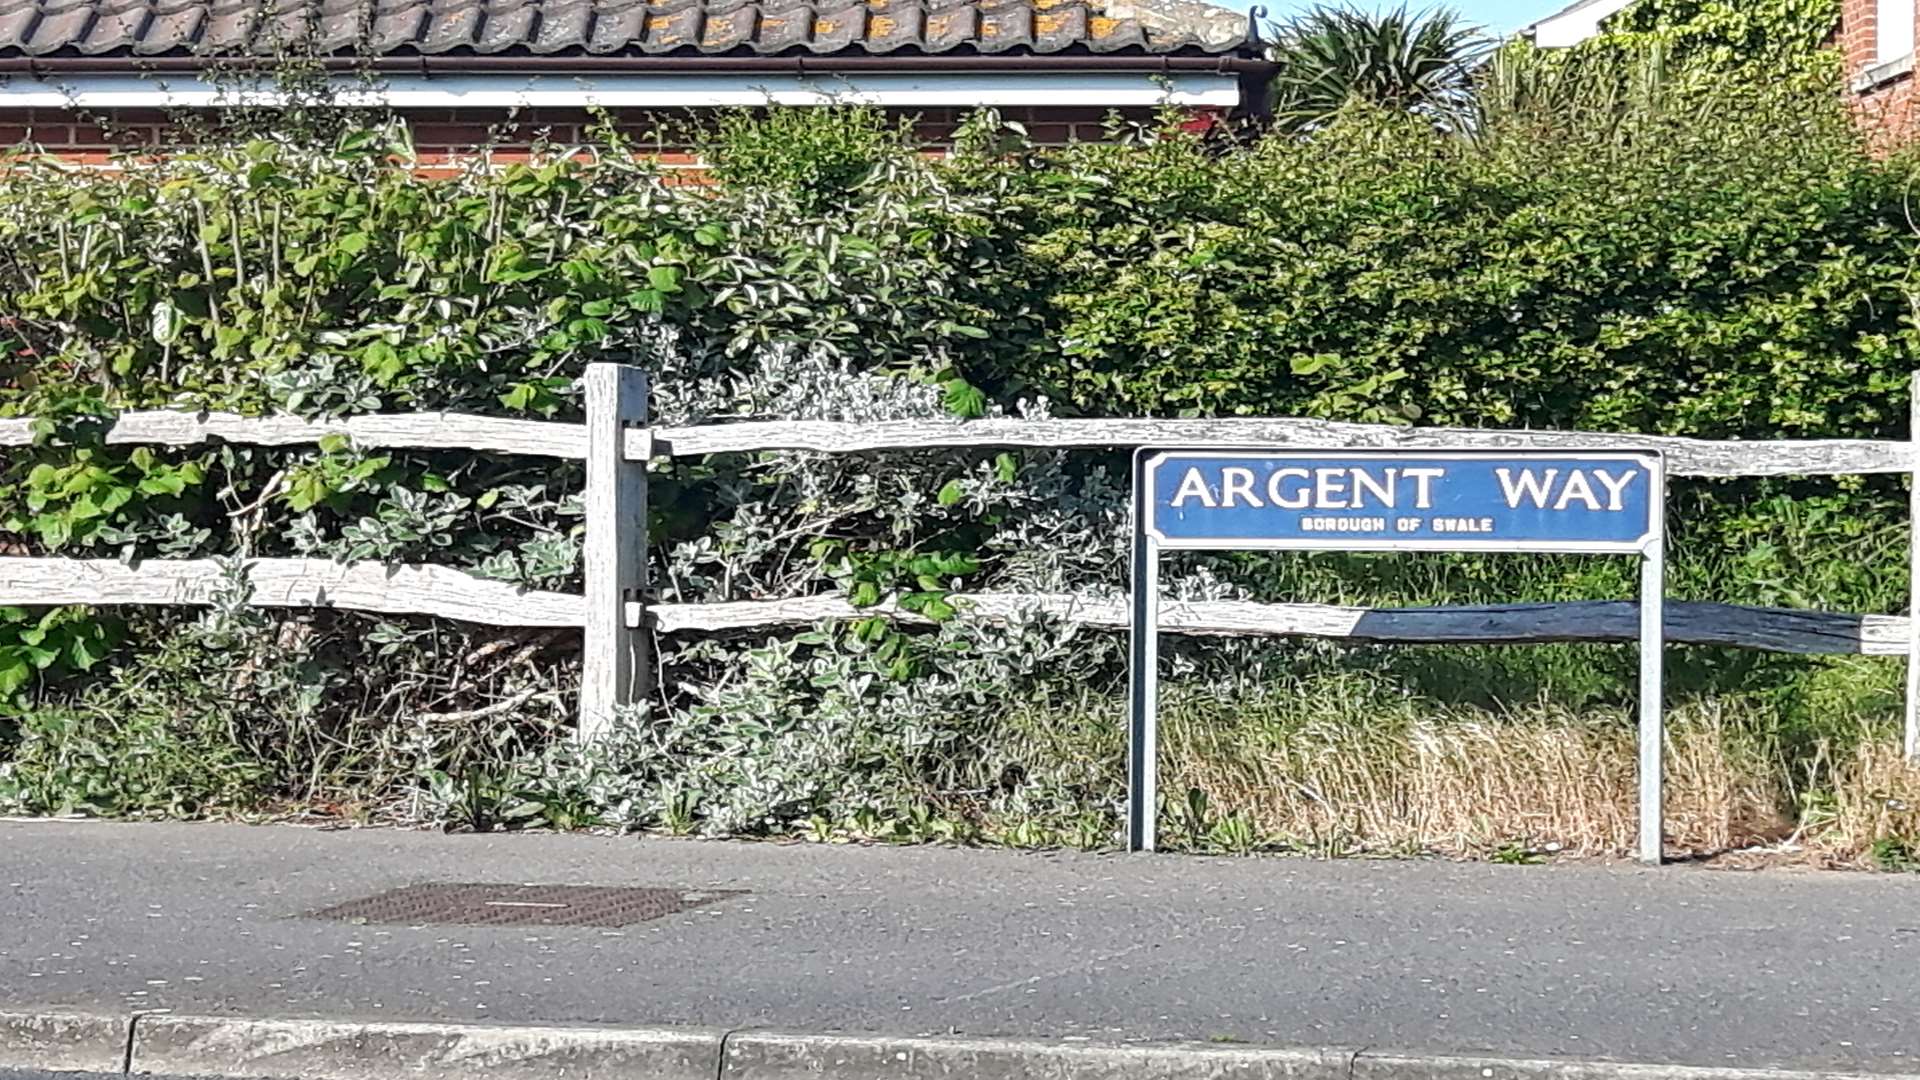 Argent Way at Sonora Fields housing estate, Sittingbourne